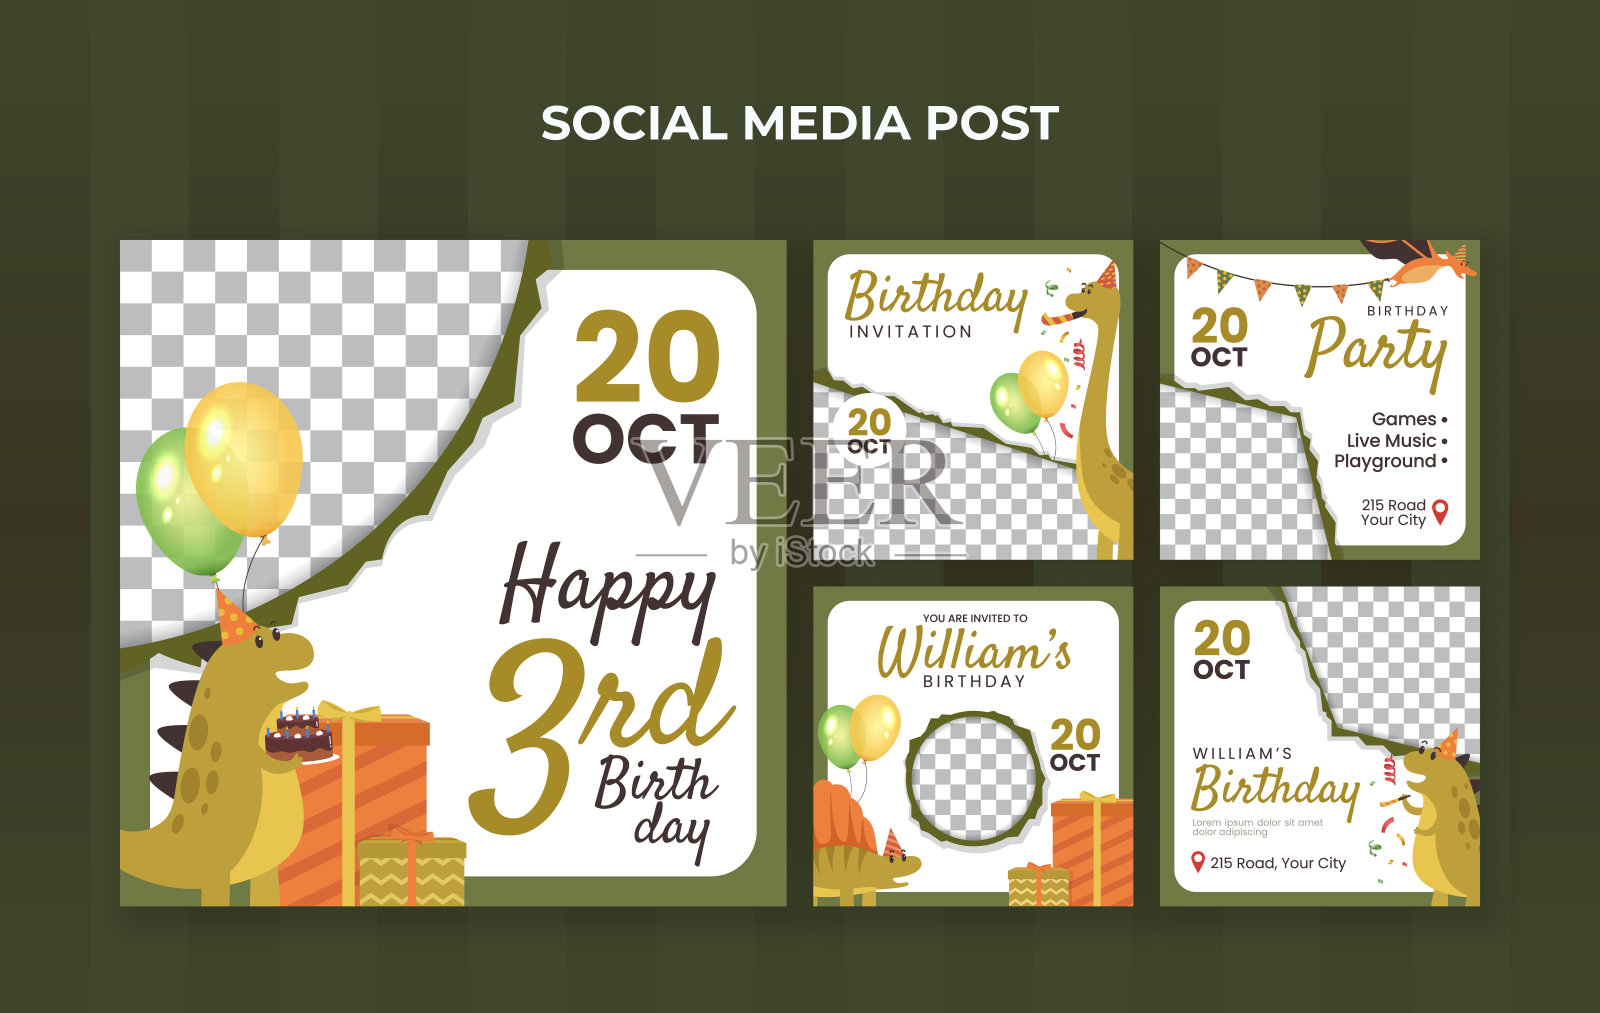 孩子生日派对社交媒体发布模板。适合儿童生日邀请或其他儿童活动设计模板素材